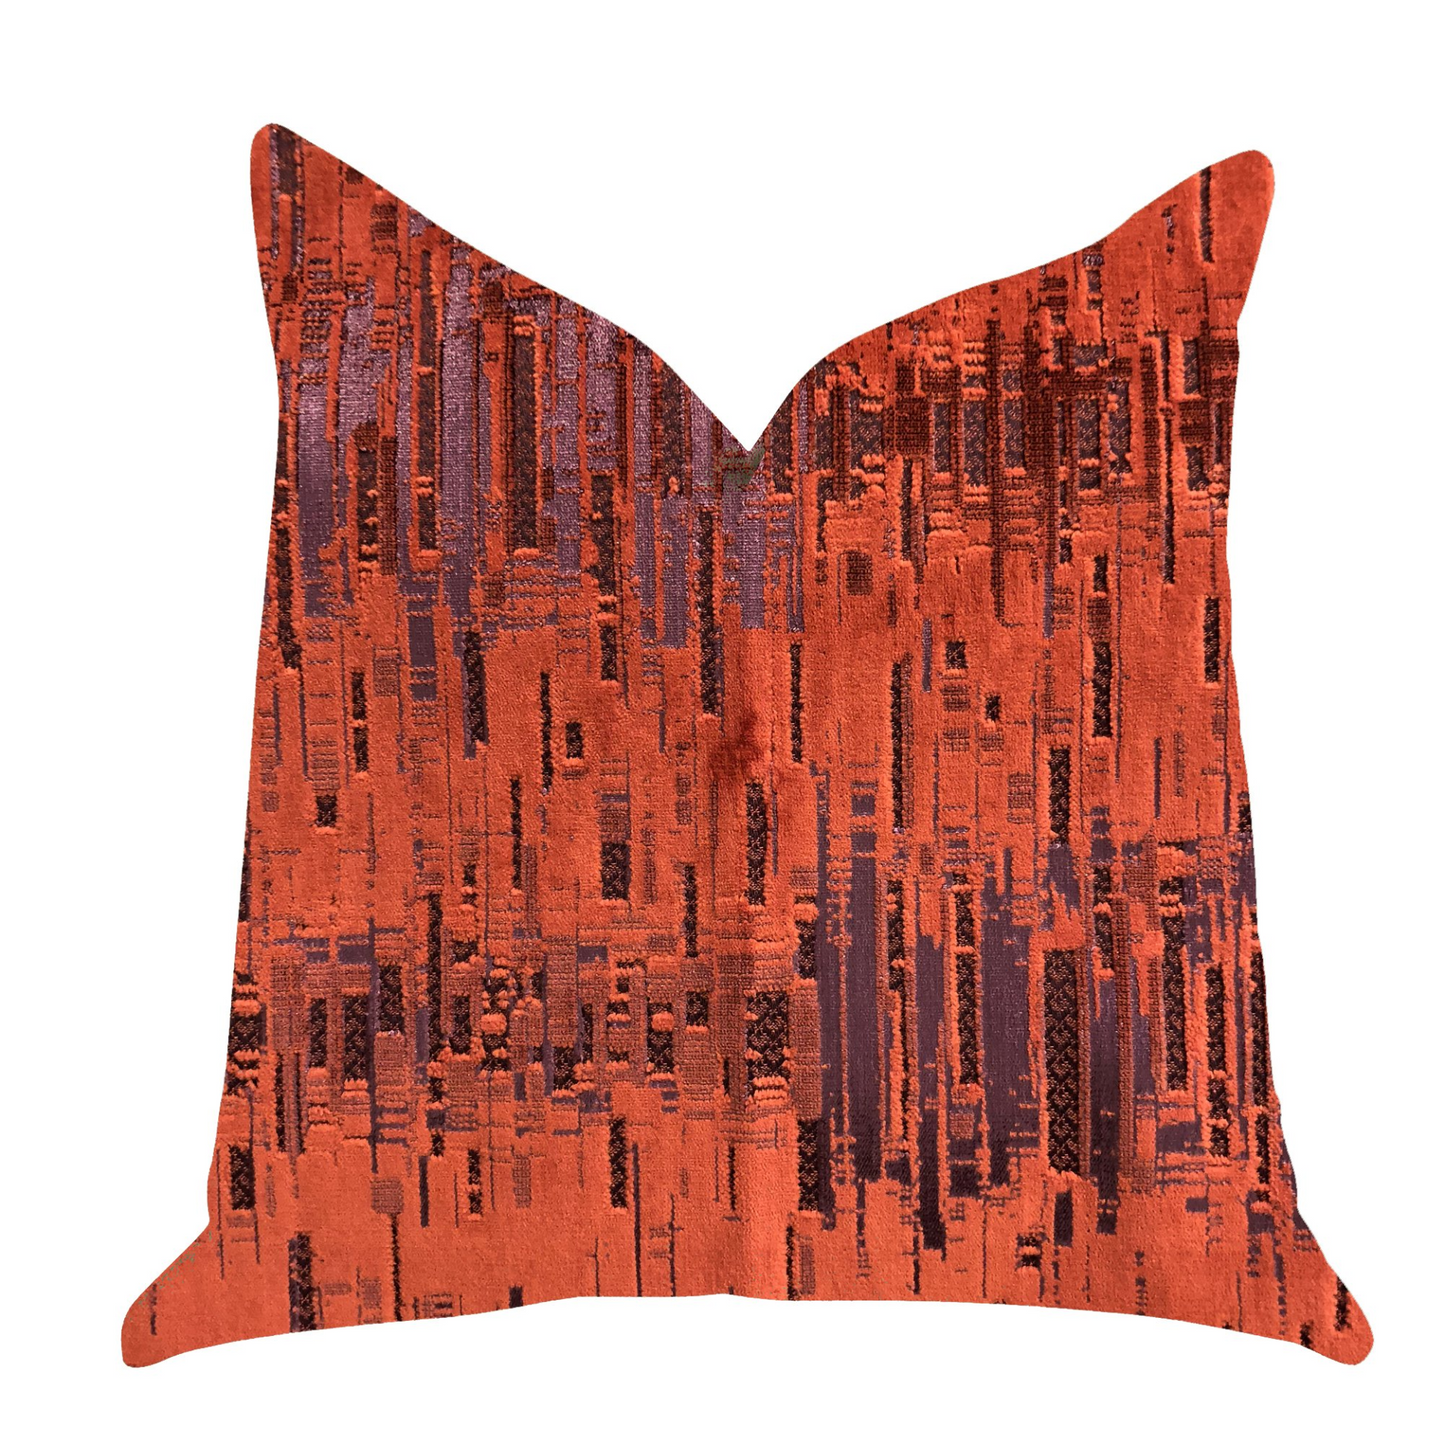 Luminous Skyscraper Luxury Throw Pillow in Orange Red Tones